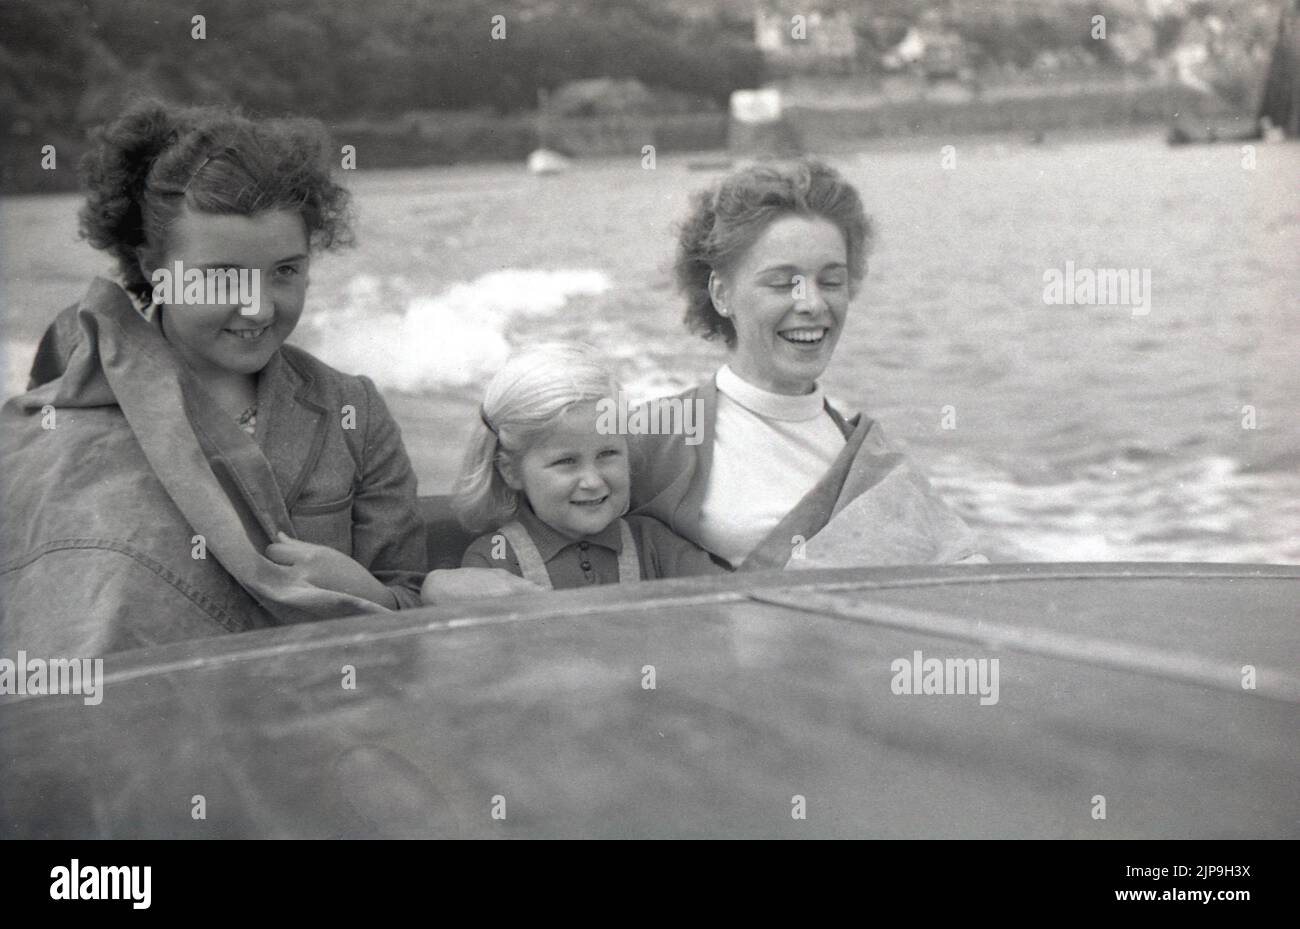 1950, historique, mère avec des filles assis dans un hors-bord., imperméable couvrant dessus, arrêtant le jet de la mer, Angleterre, Royaume-Uni. Banque D'Images